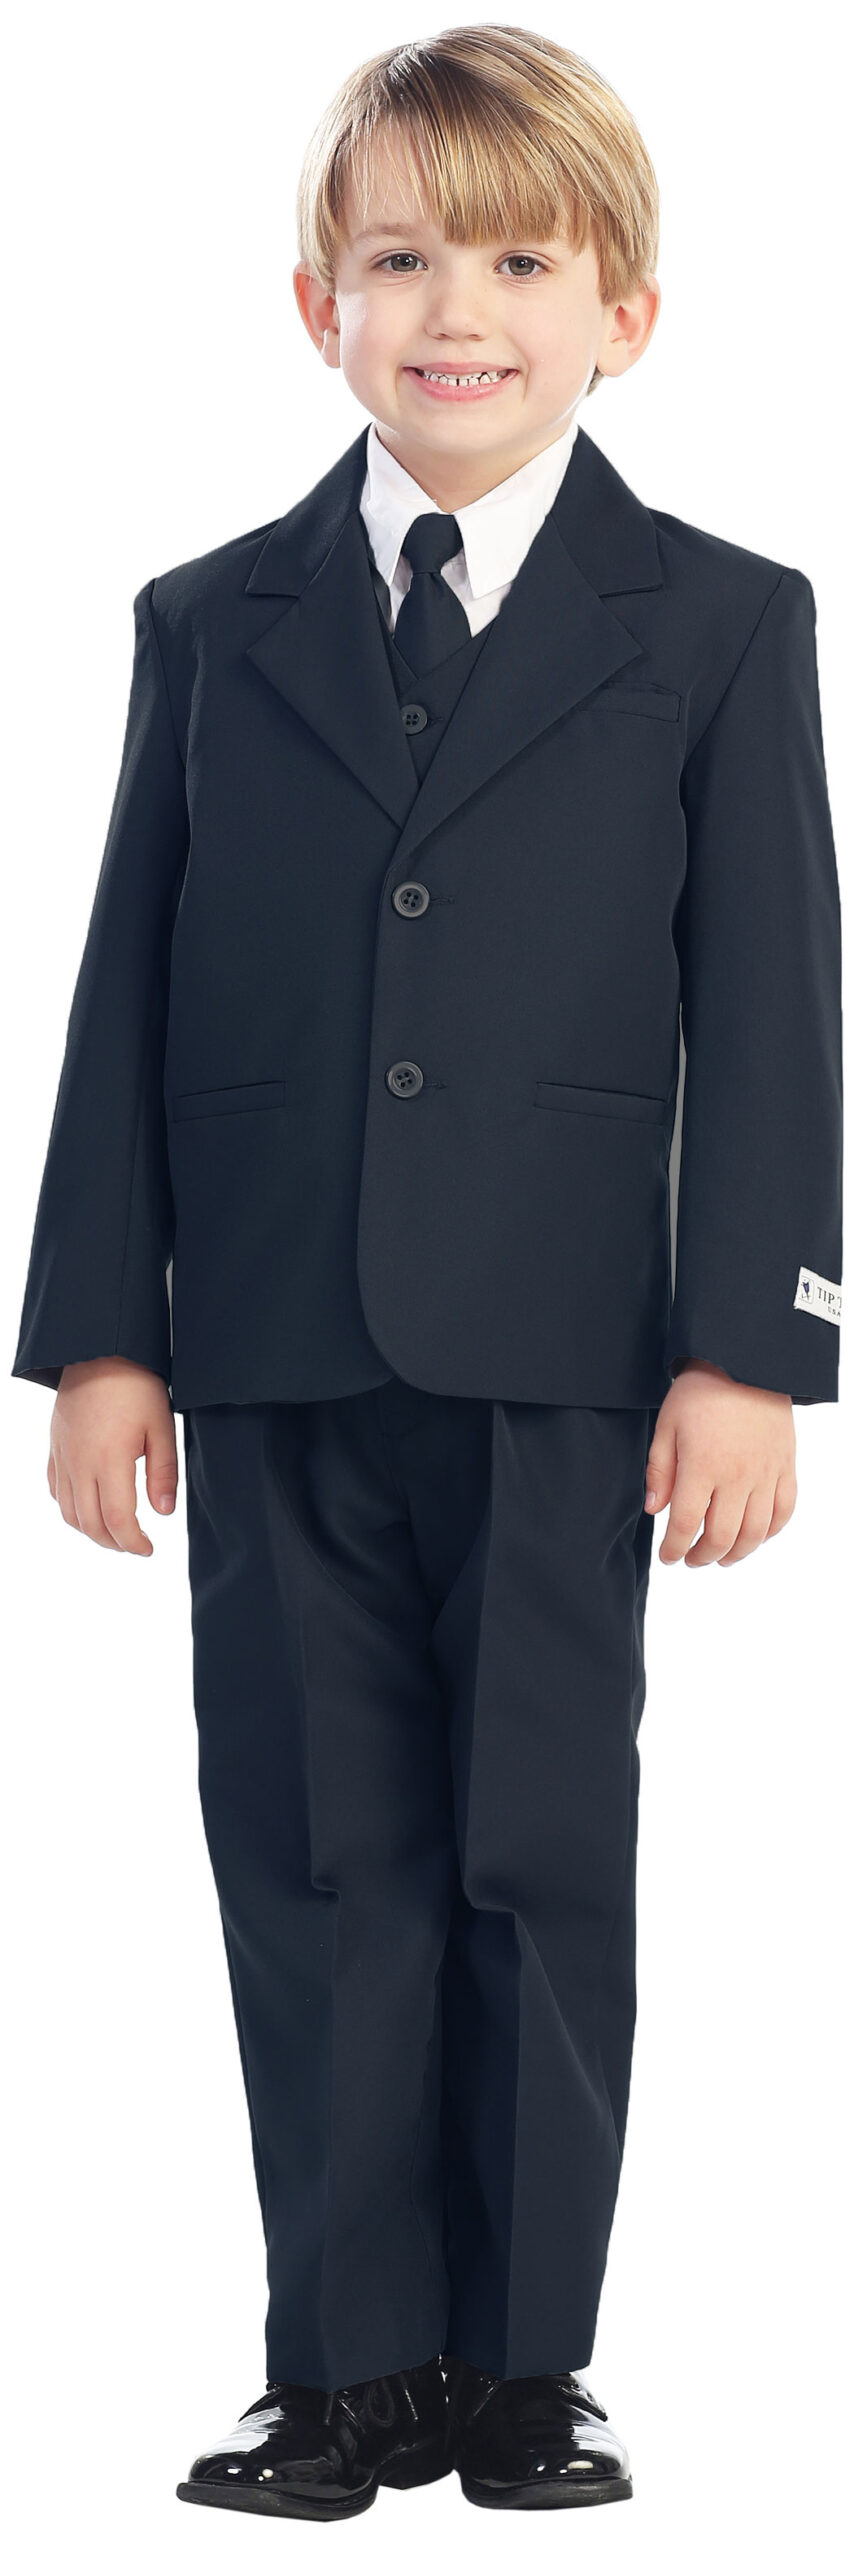 Avery Hill 5-Piece Boy's 2-Button Dress Suit Full-Back Vest - Navy Blue Size 18